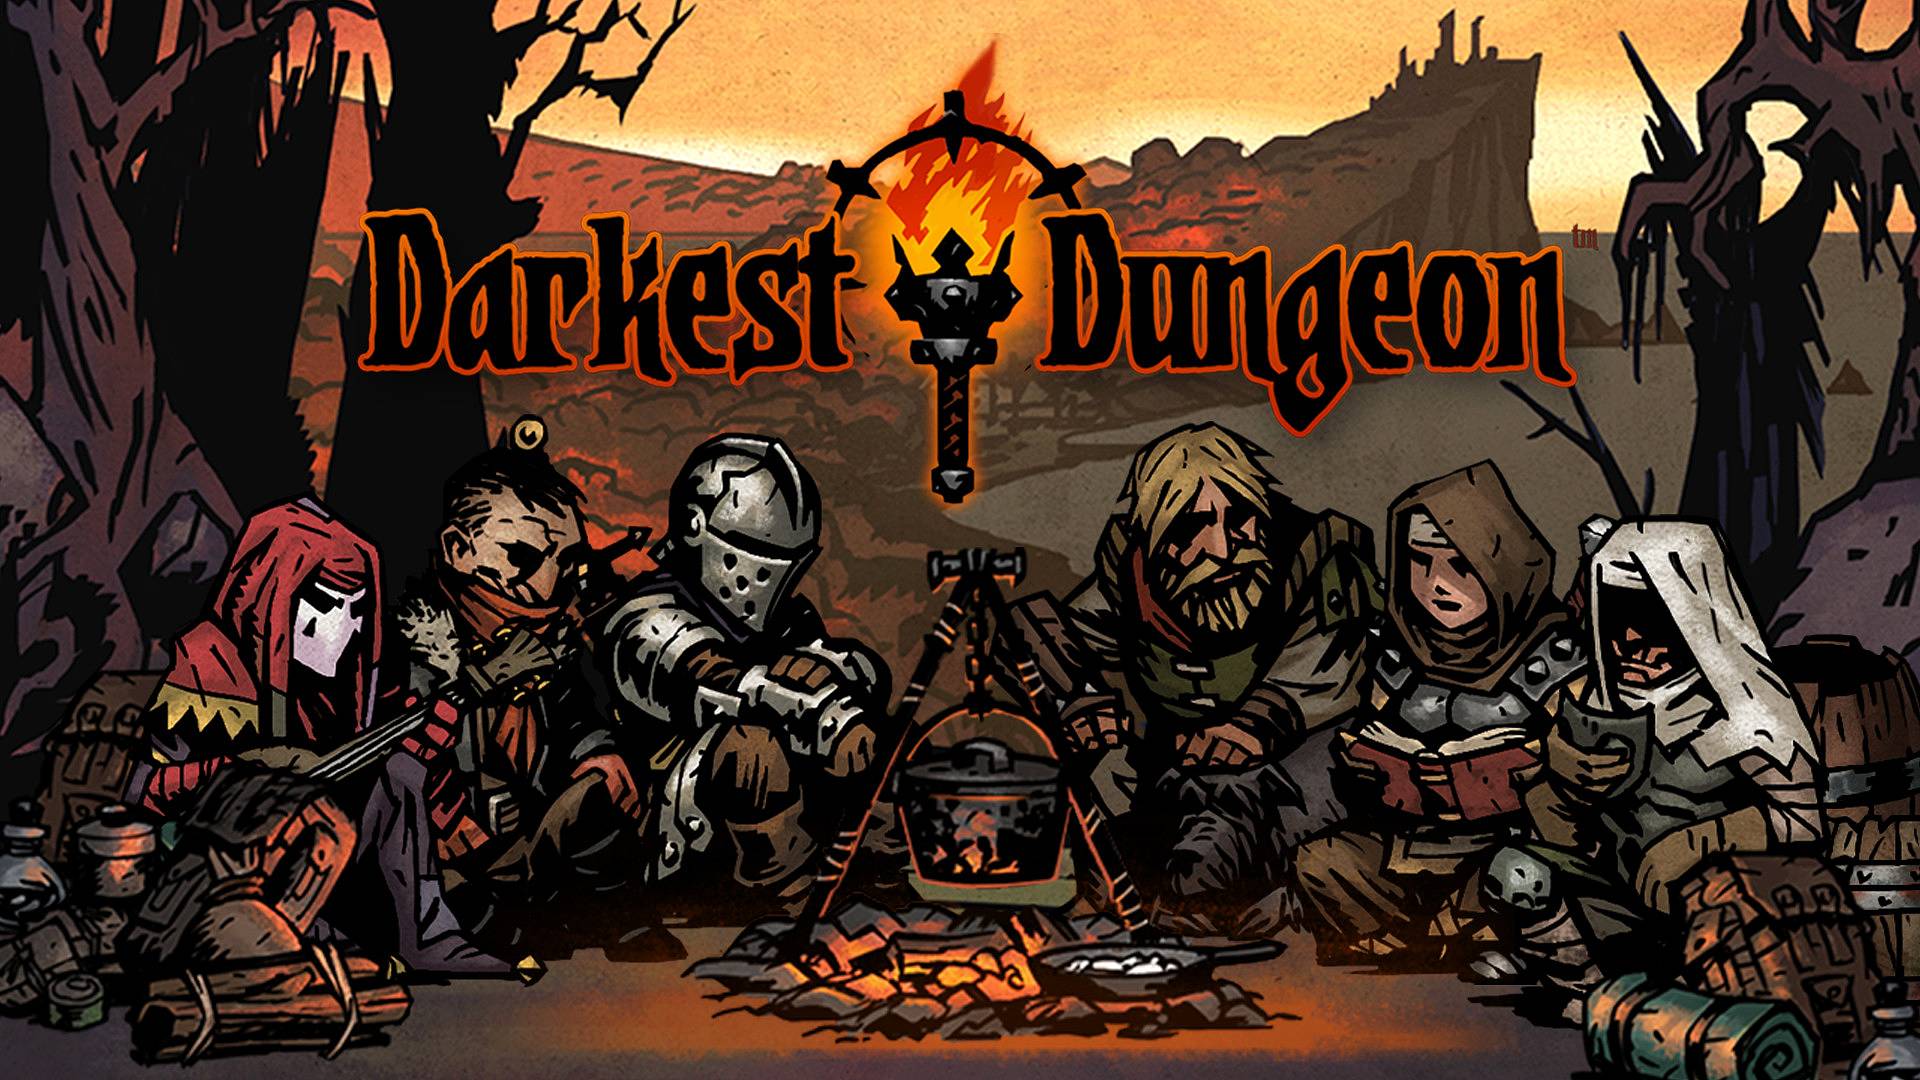 The Darkest Dungeon heroes resting around a campfire.